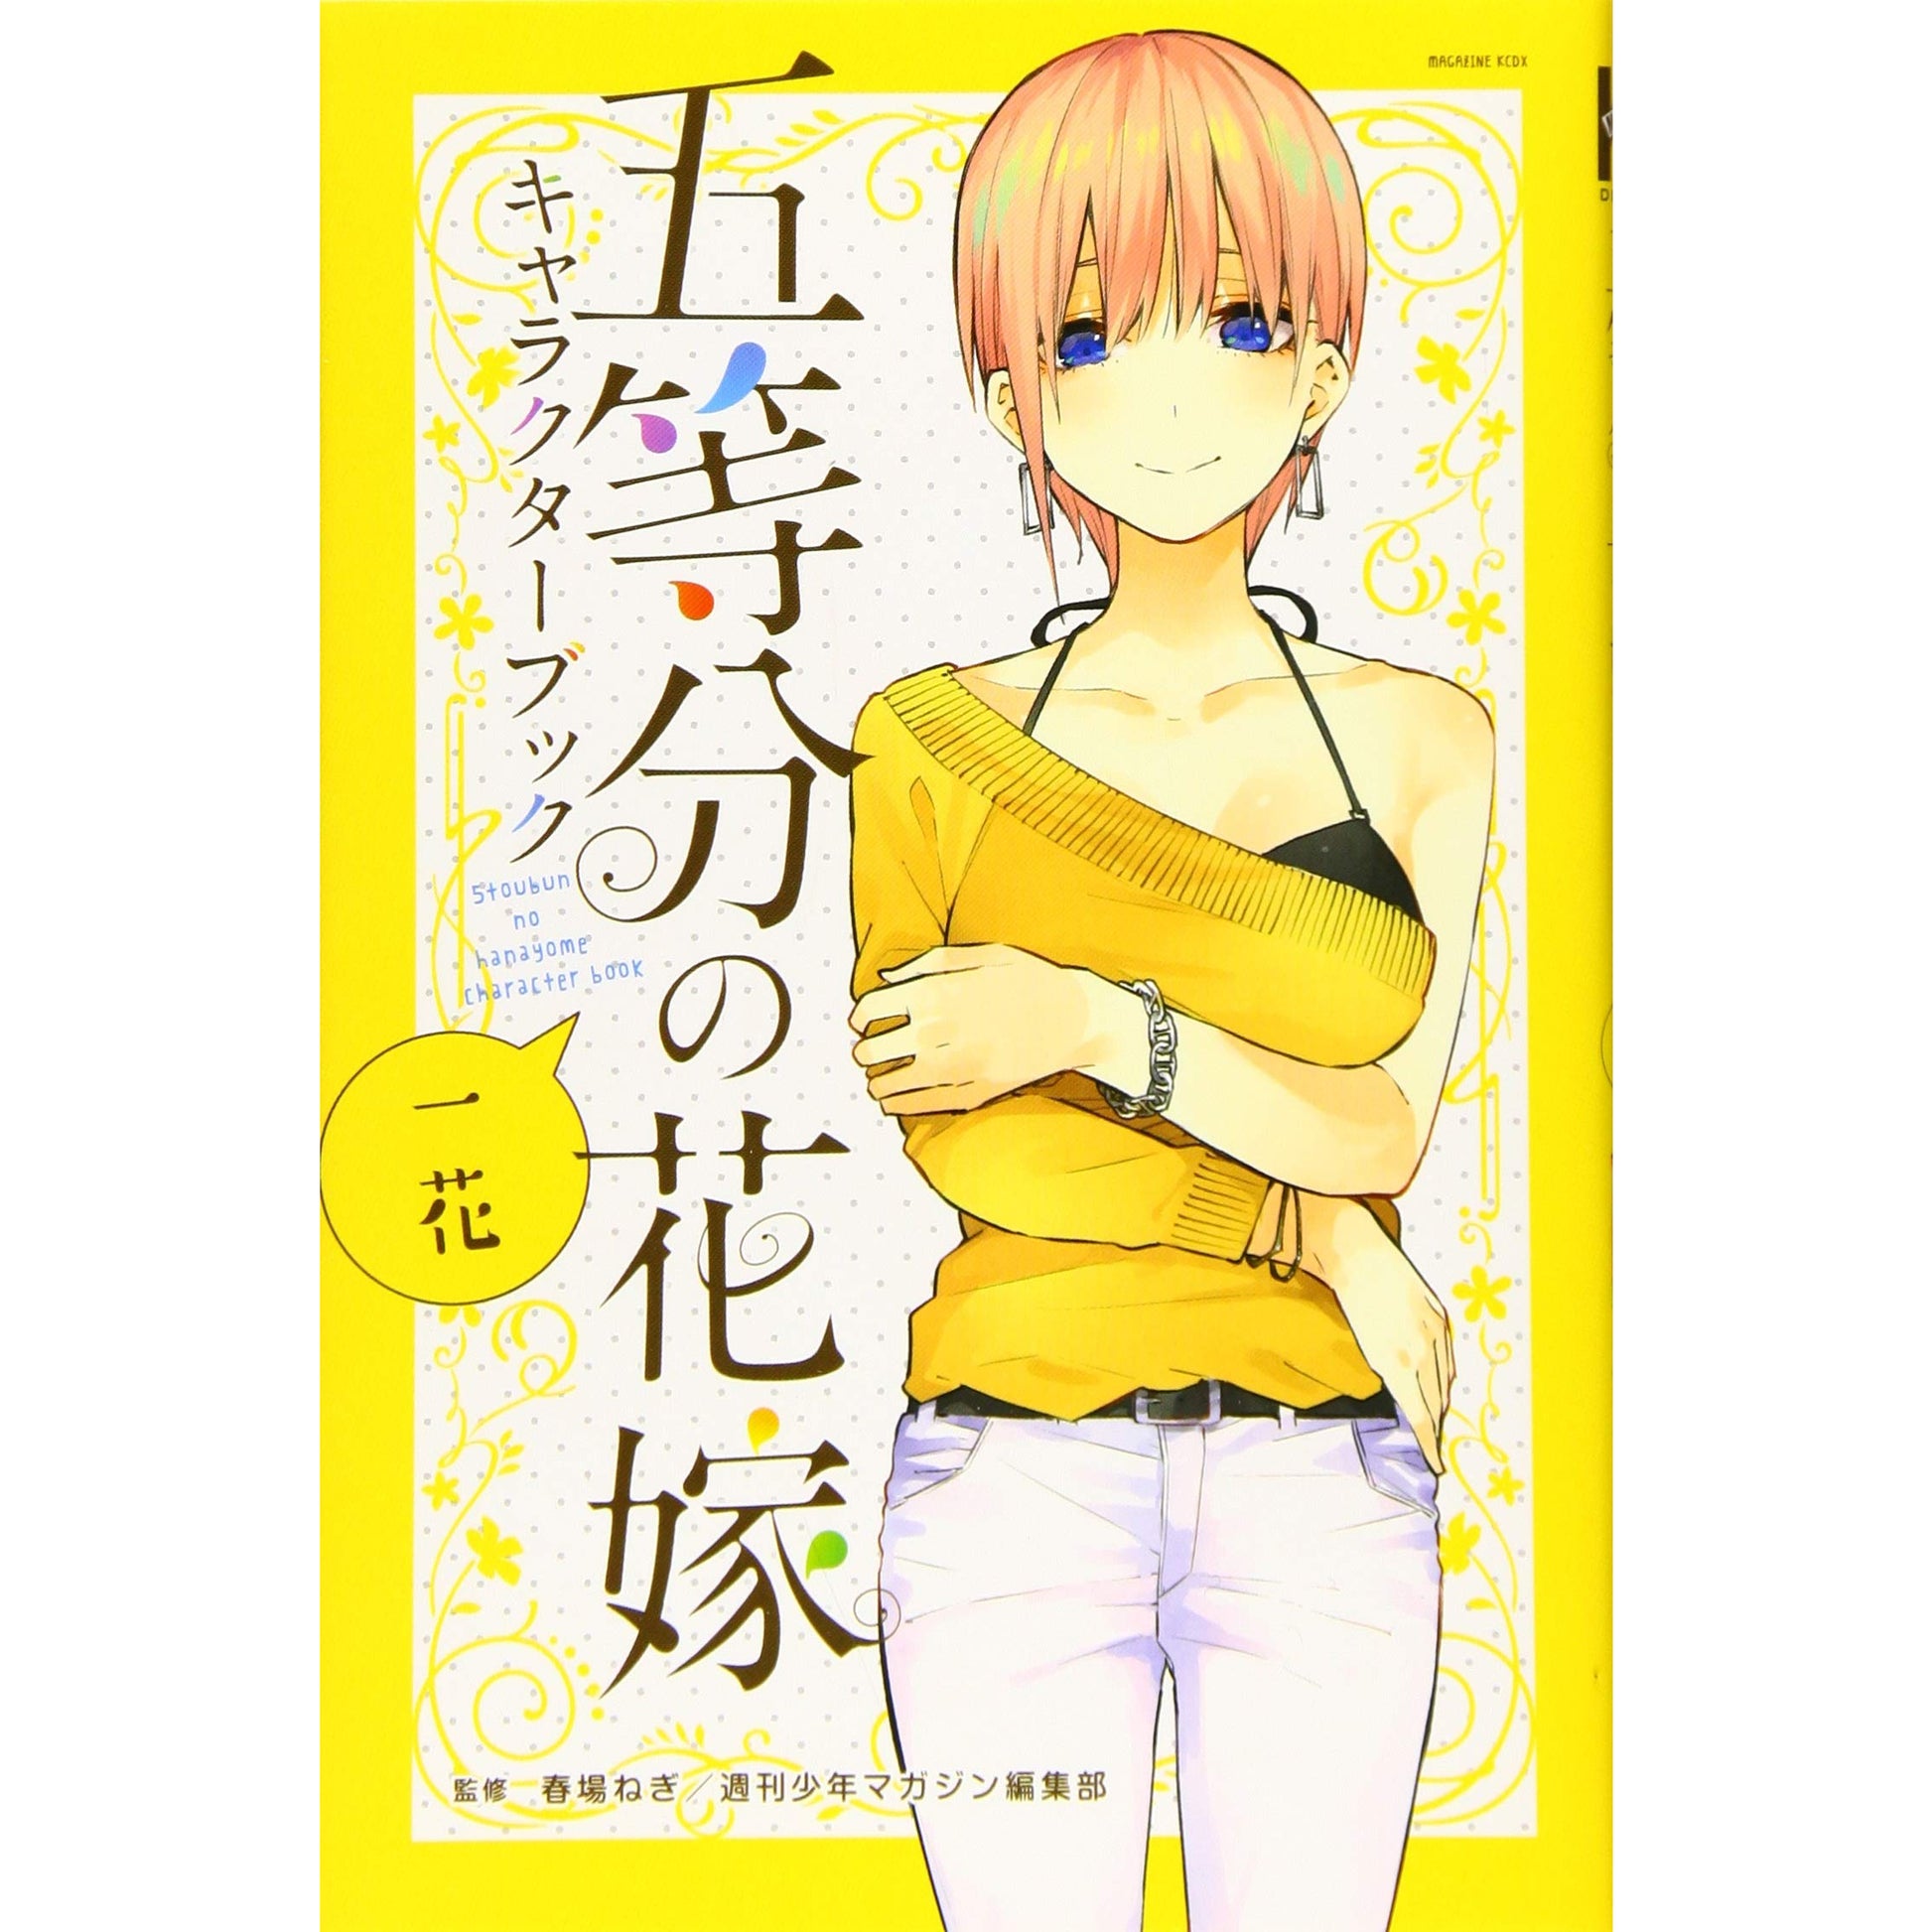 Yotsuba Nakano The Quintessential Quintuplets Character Book Japan manga NEW